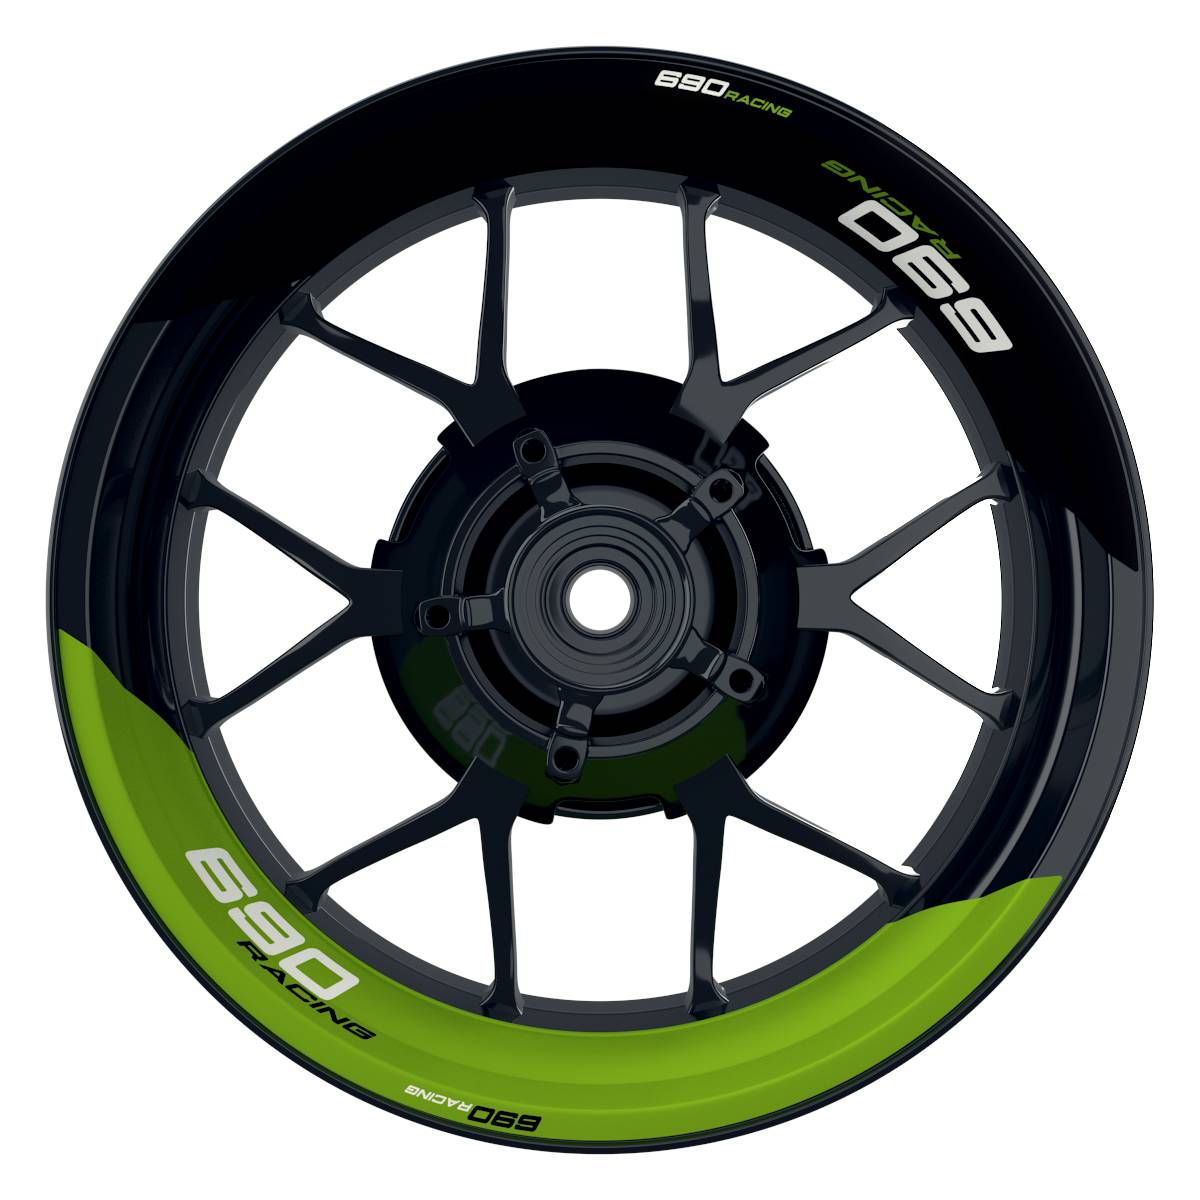 KTM Racing 690 halb halb schwarz gruen Frontansicht